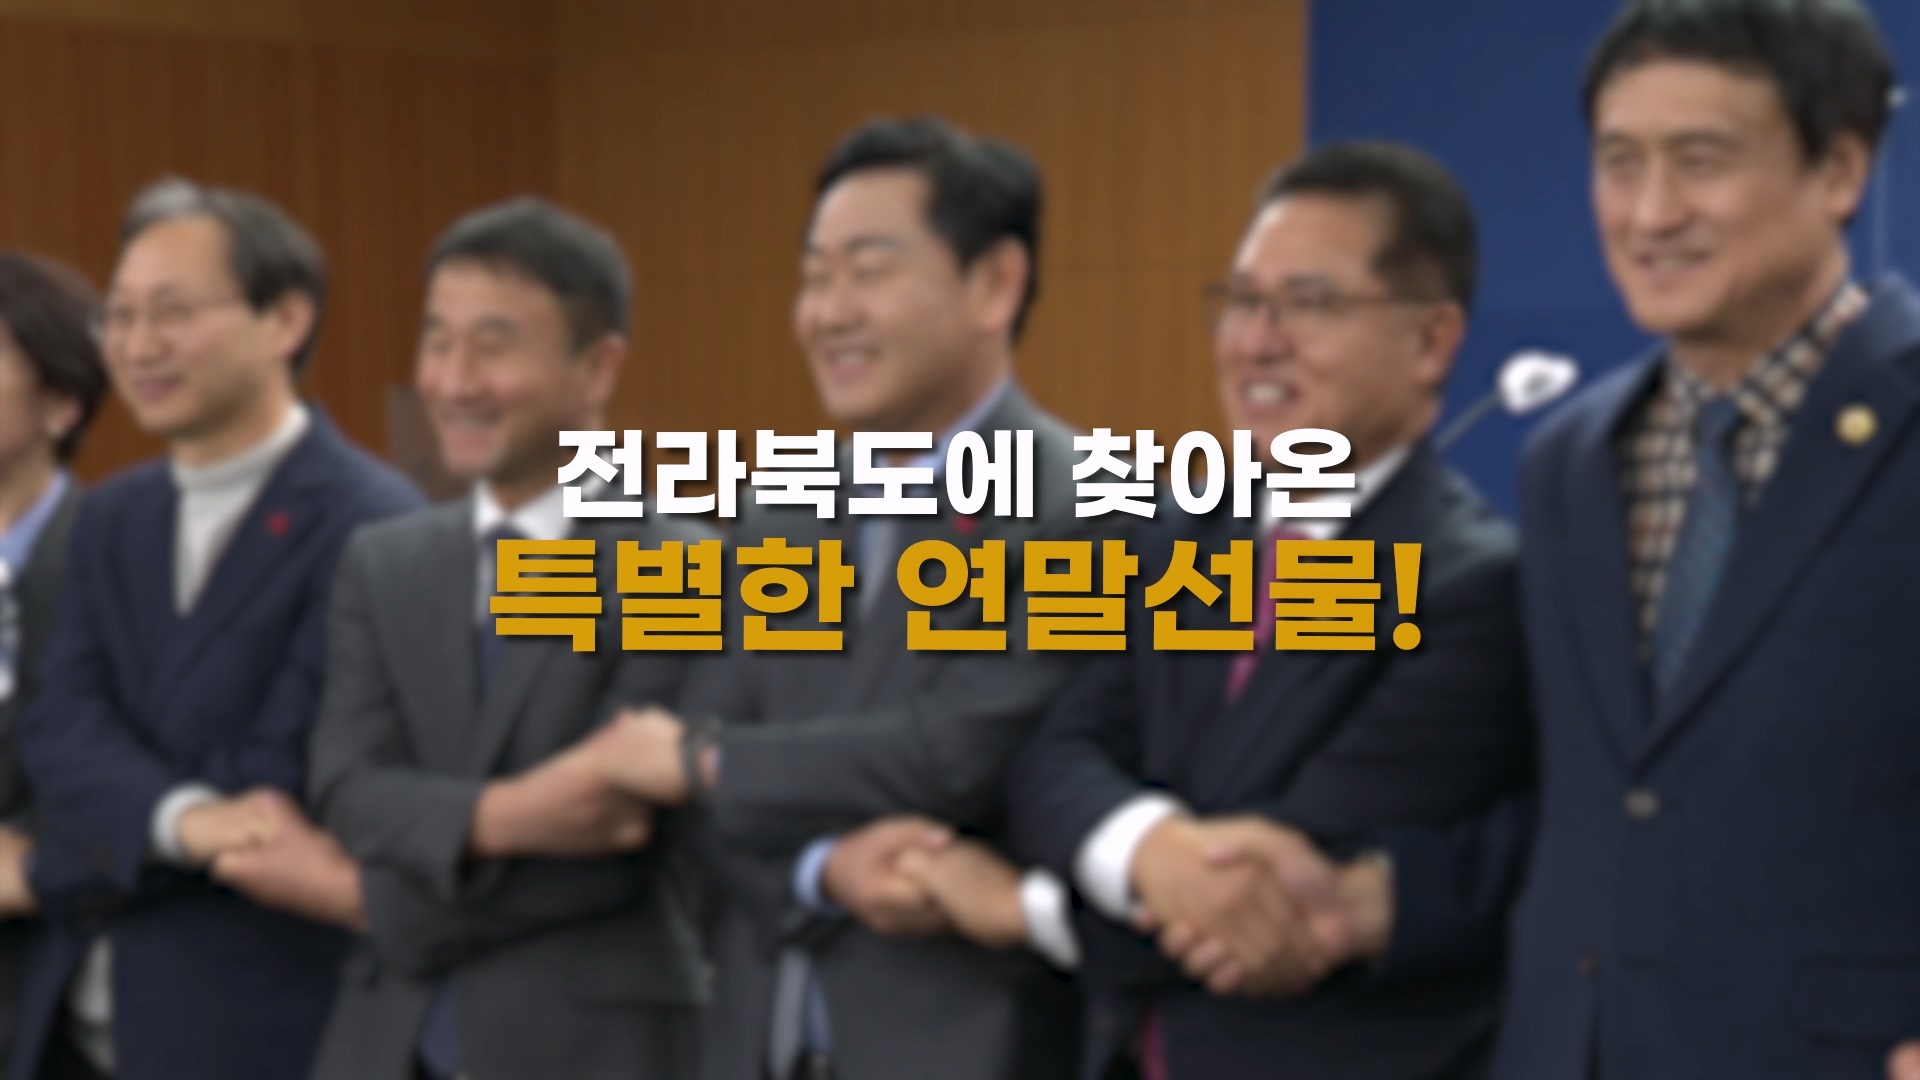 더 특별해진 전라북도! 전북특별자치도법 국회 통과!